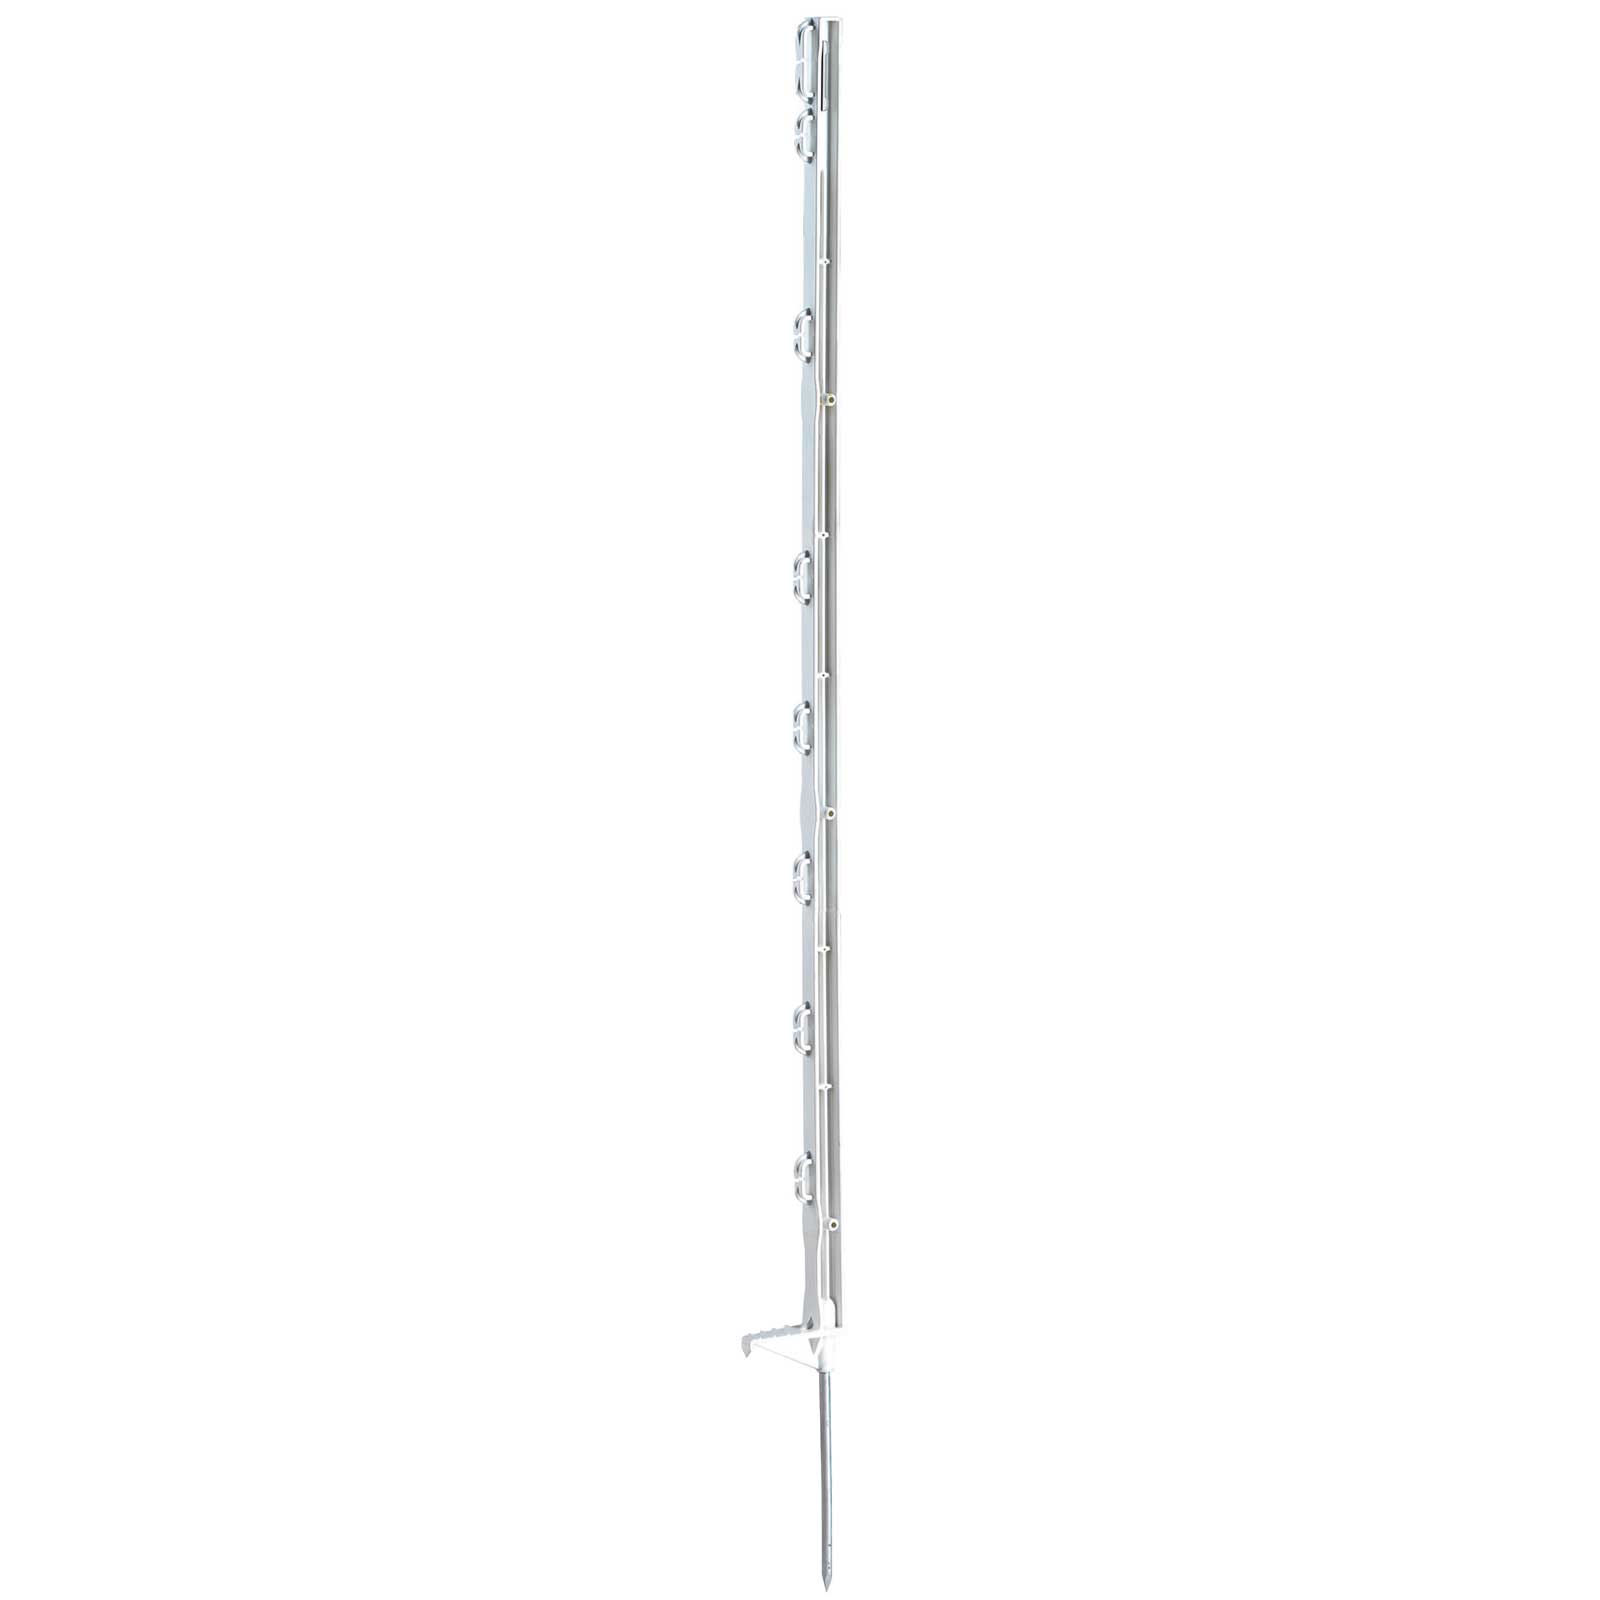 Piquet plastique Agrarzone 105 cm, marche pied unique, blanc (pack de 20)